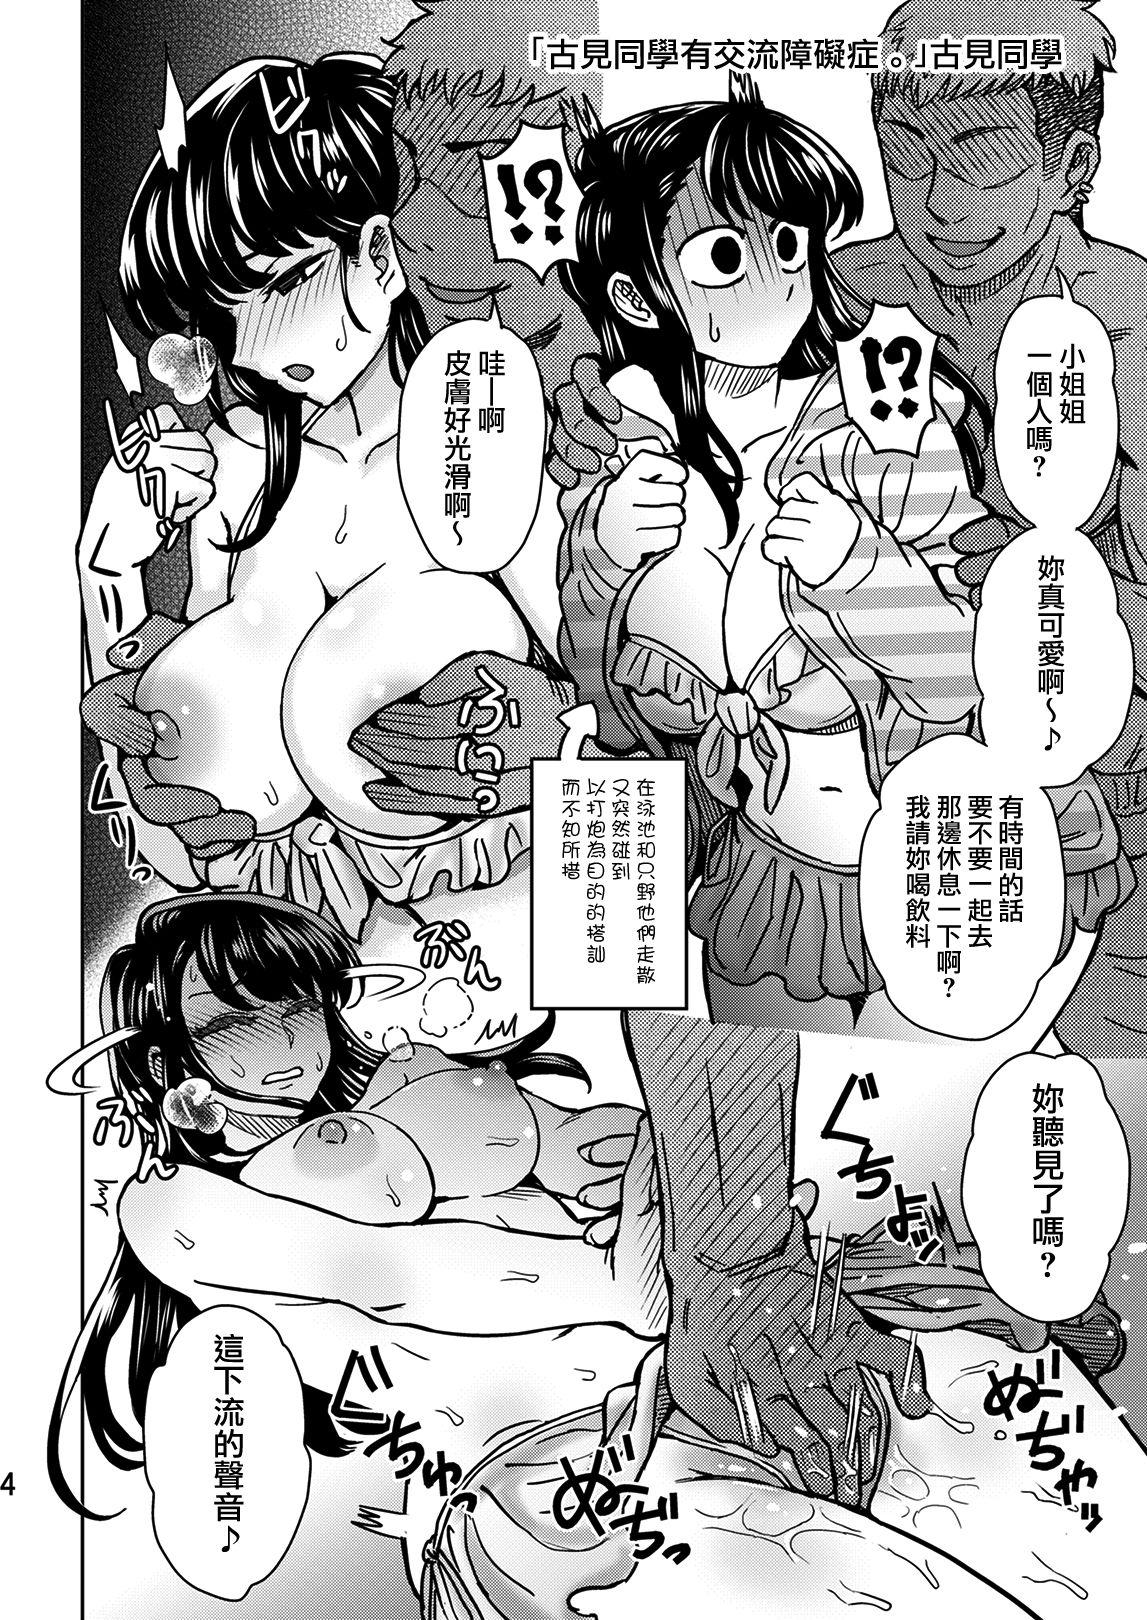 Squirters C95 Yorozu NTR Short Manga Shuu - Komi-san wa komyushou desu. Caiu Na Net - Page 5